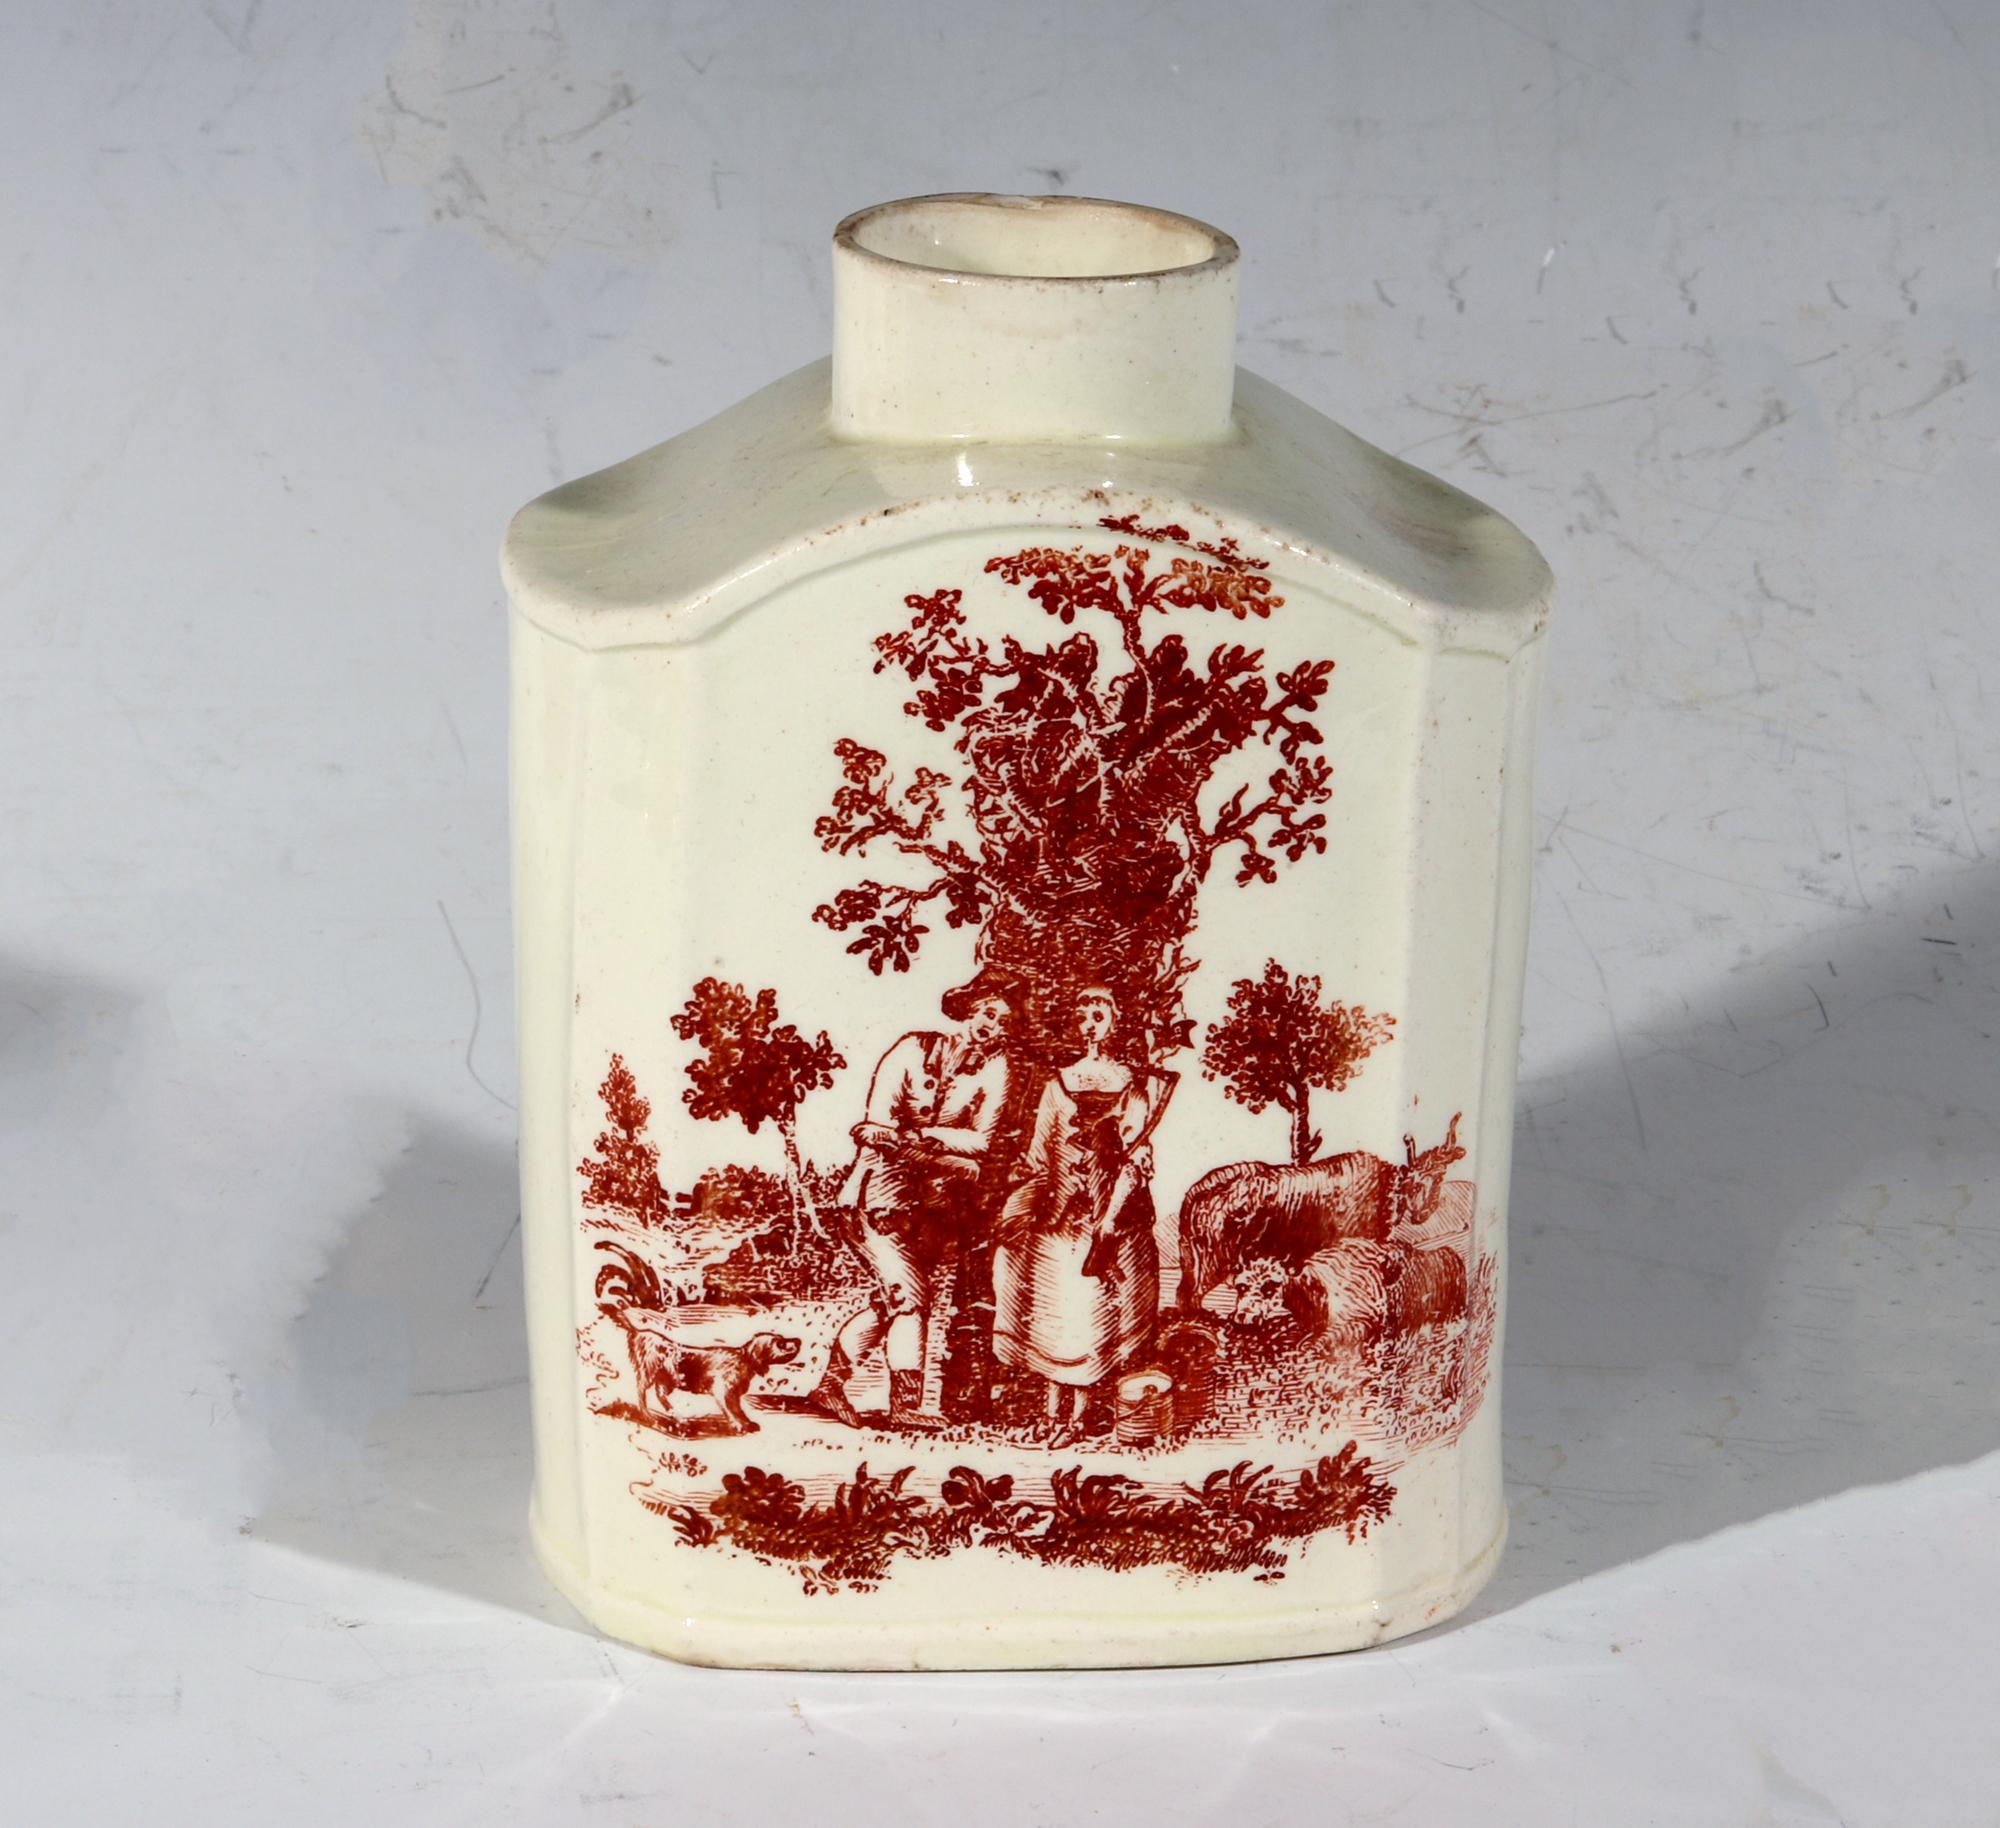 Rot bedruckte Teedose aus Steingut des 18. Jahrhunderts,
ca. 1765-75

Die Teedose oder der Teewagen aus Sahne hat eine rechteckige Form mit großen Platten auf der Vorder- und Rückseite und einer konkaven Kante auf jeder Seite. Die Seiten sind